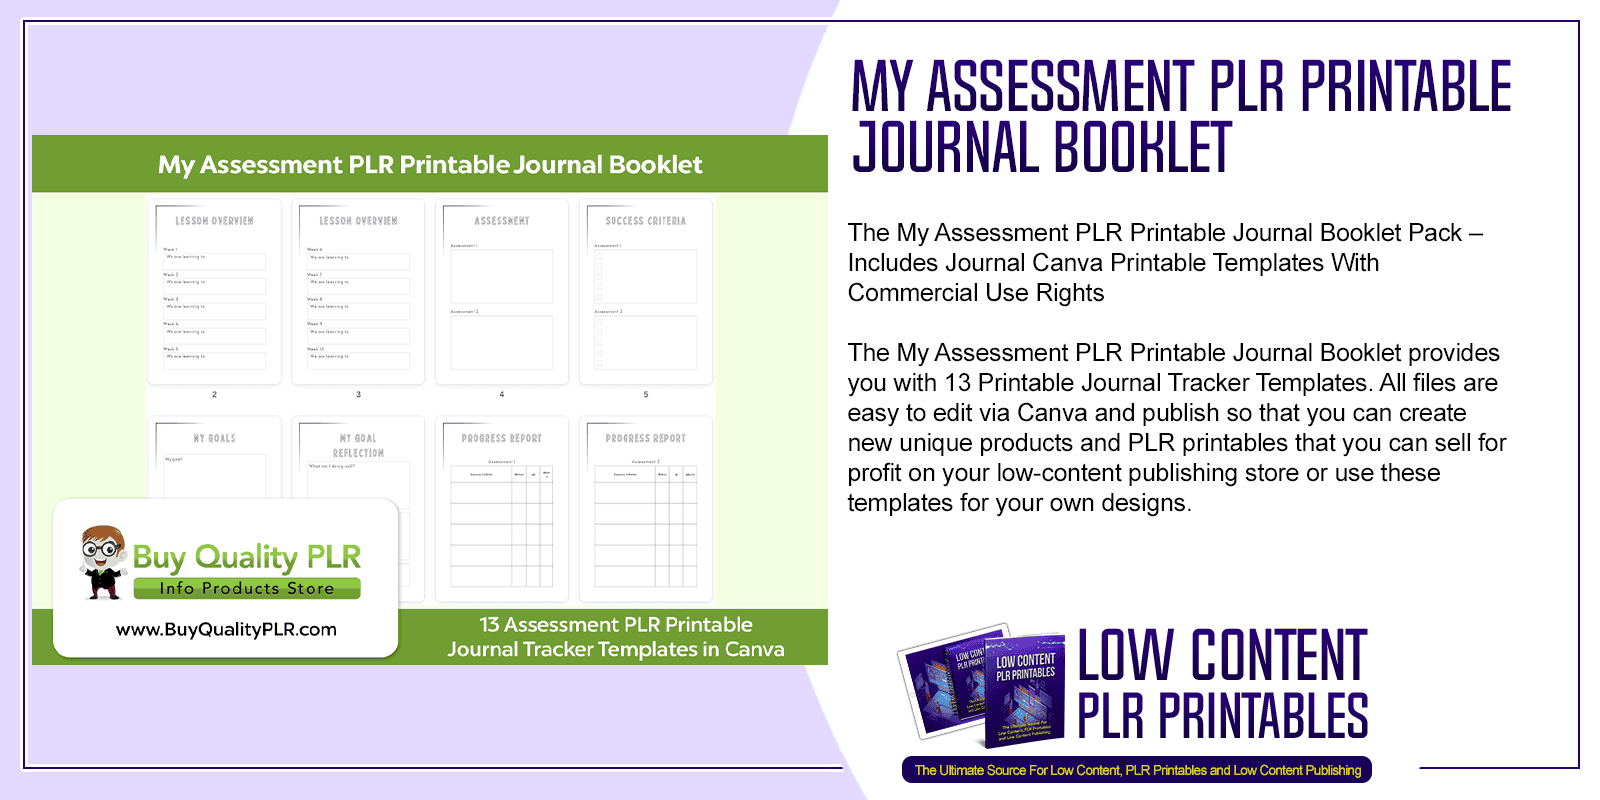 My Assessment PLR Printable Journal Booklet